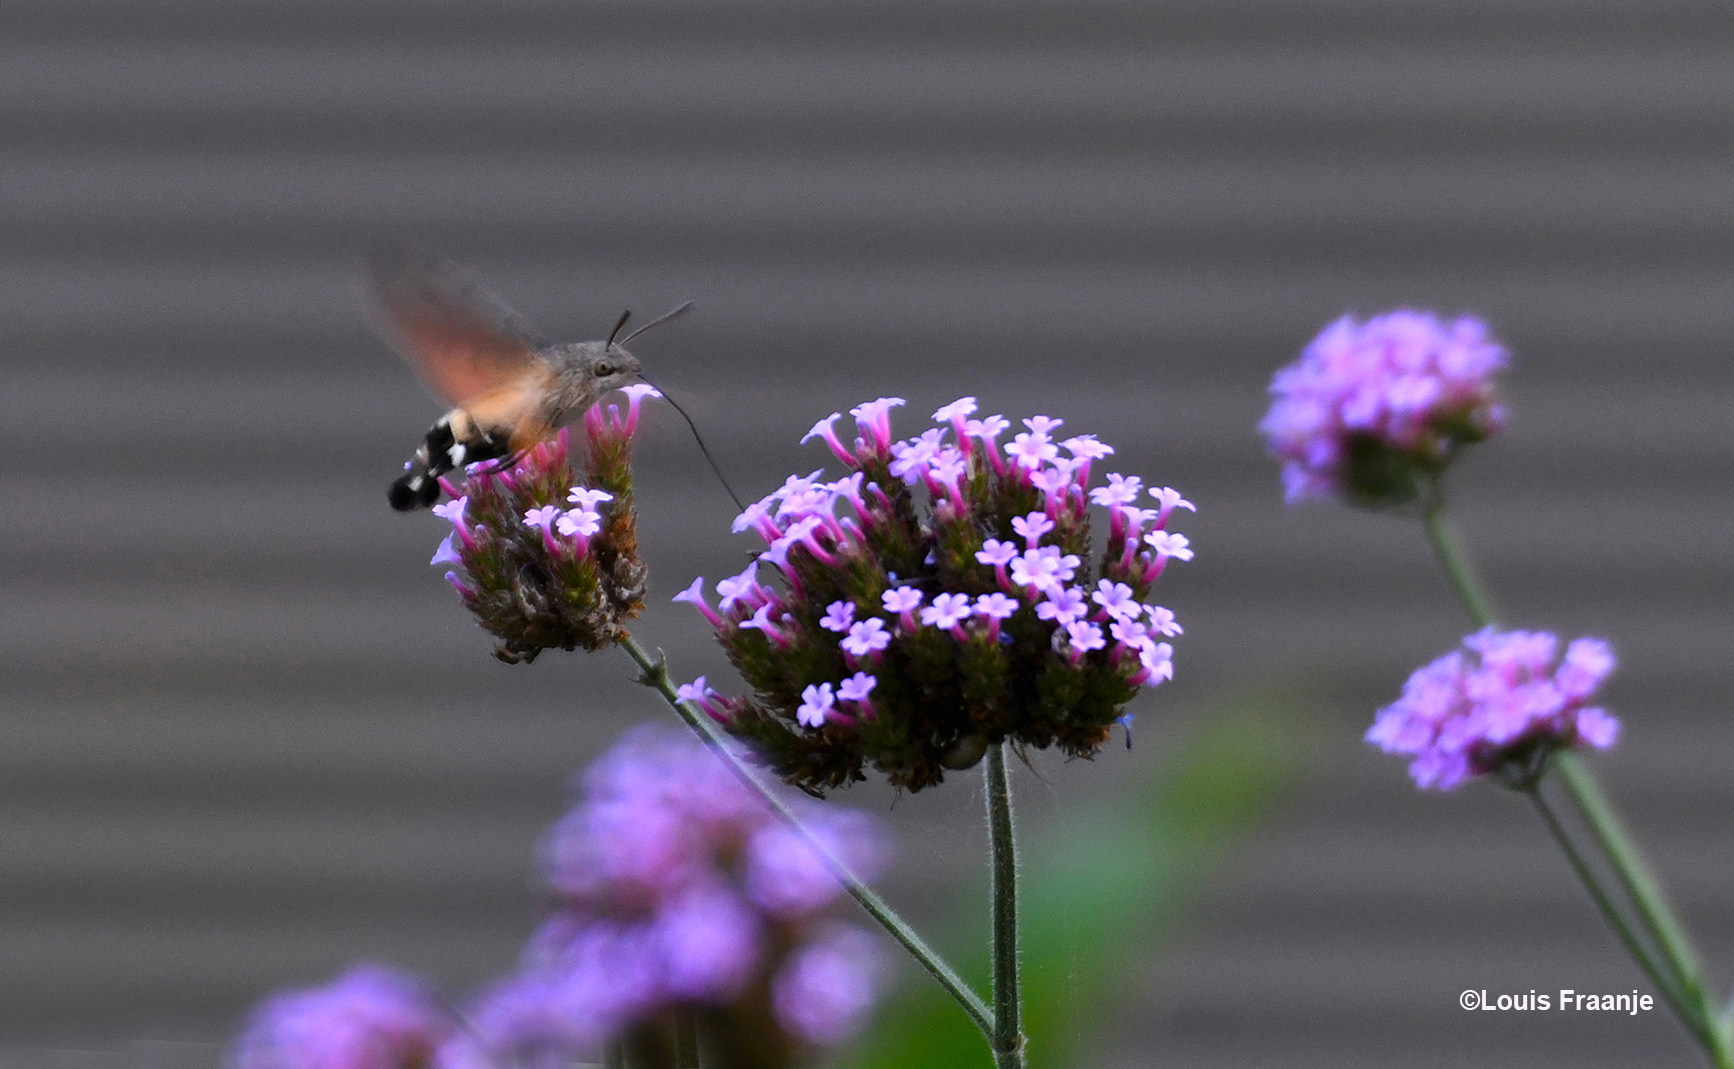 De kolibrievlinder hangt onrustig in de lucht en peurt de nectar uit de bloem - Foto: ©Louis Fraanje